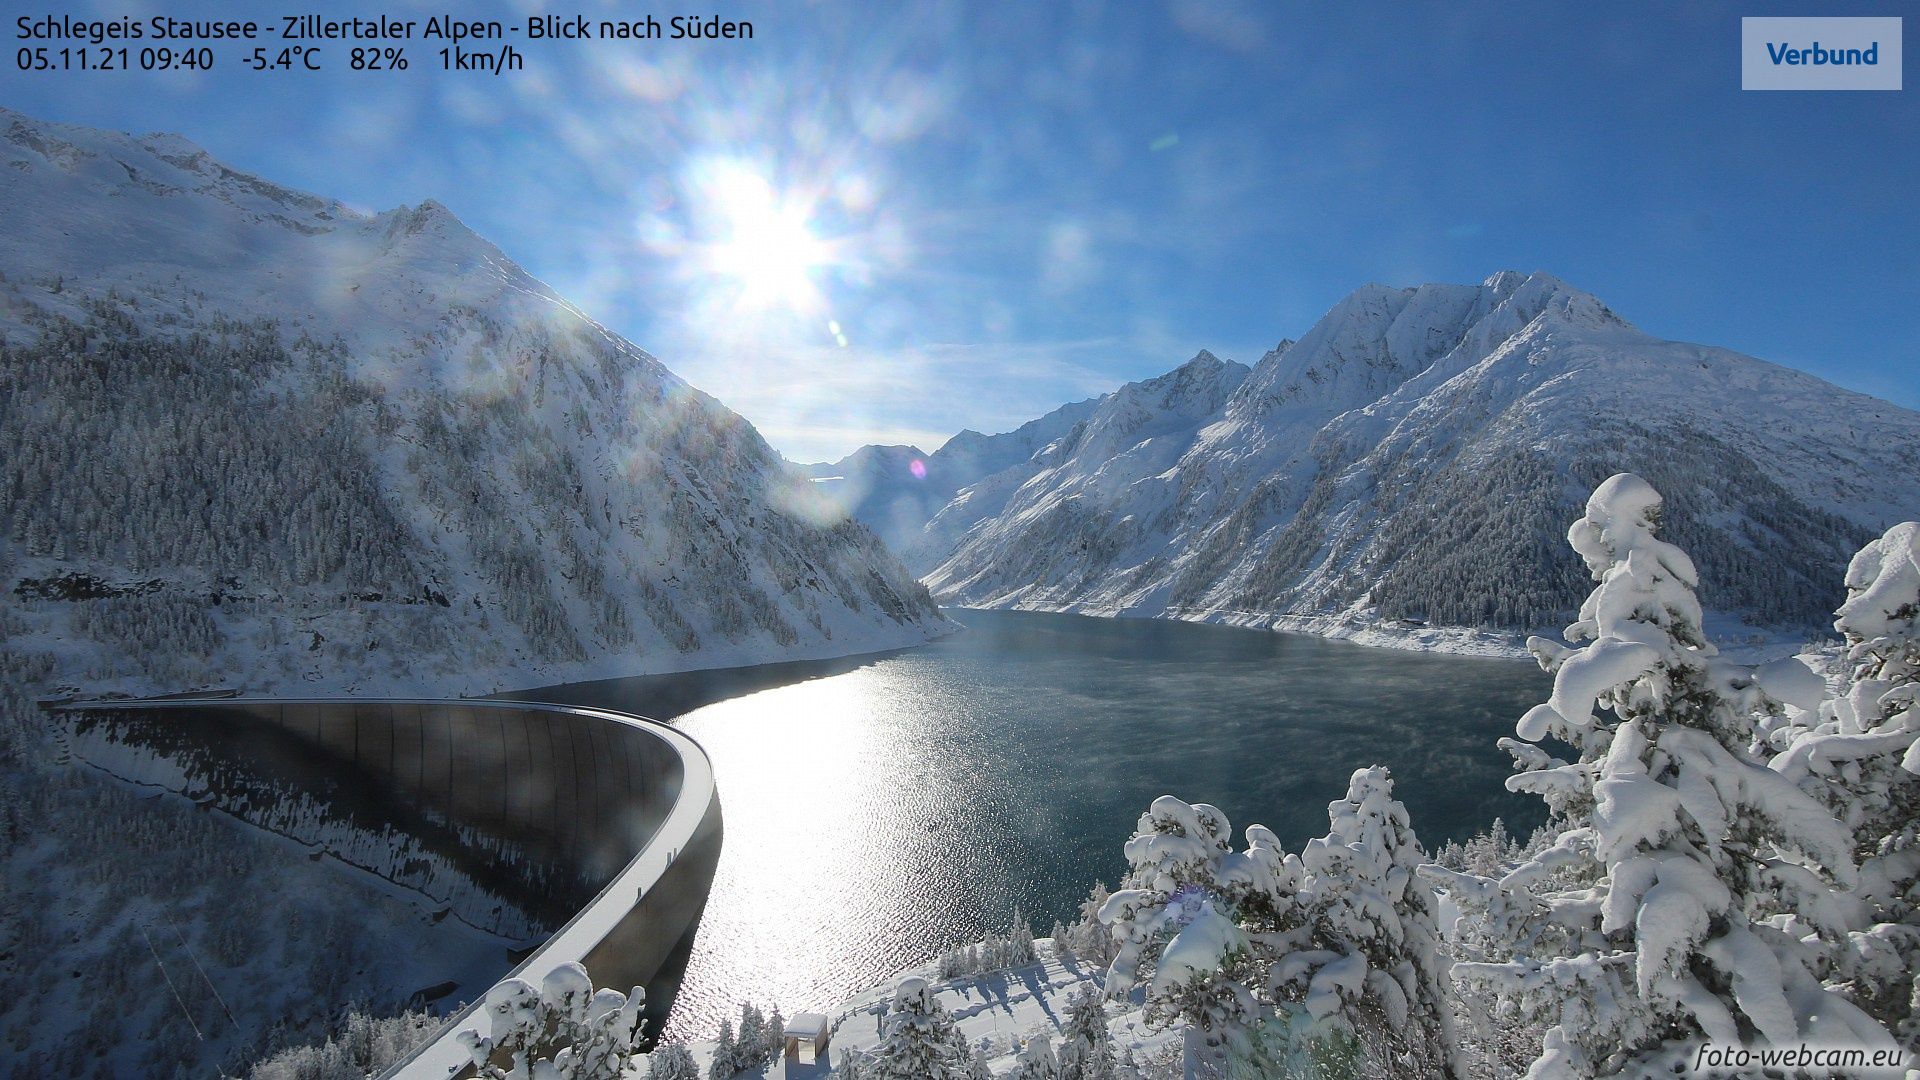 Diepwinterse morgen in de Zillertaler Alpen (foto-webcam.eu)